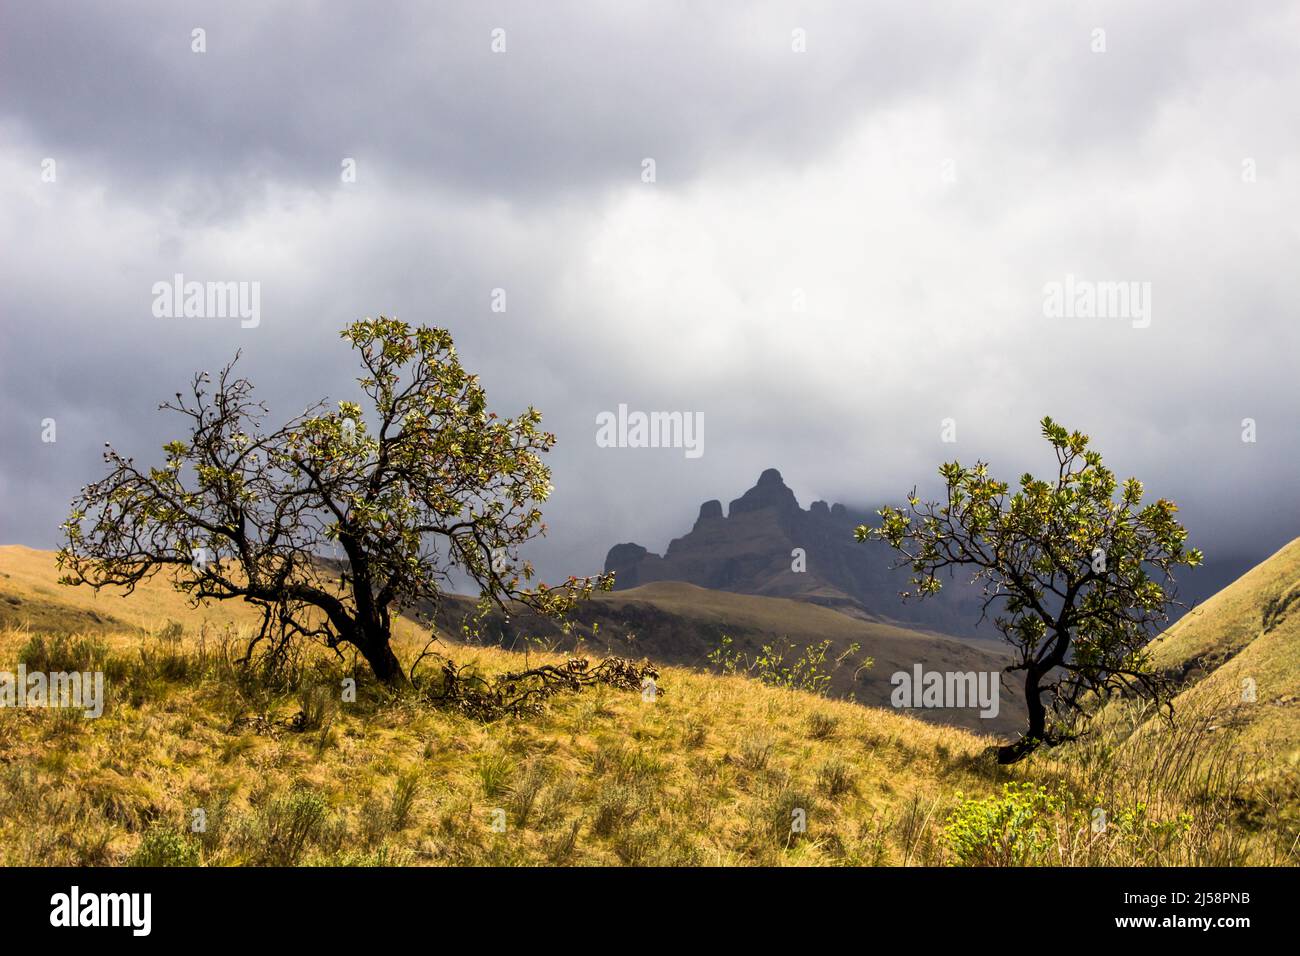 Zwei gewöhnliche Zuckerbusch-protea-Sträucher, im Drakensberg-Gebirge, gegen einen dunklen Sturm, der sich um die Gipfel im Hintergrund sammelt Stockfoto